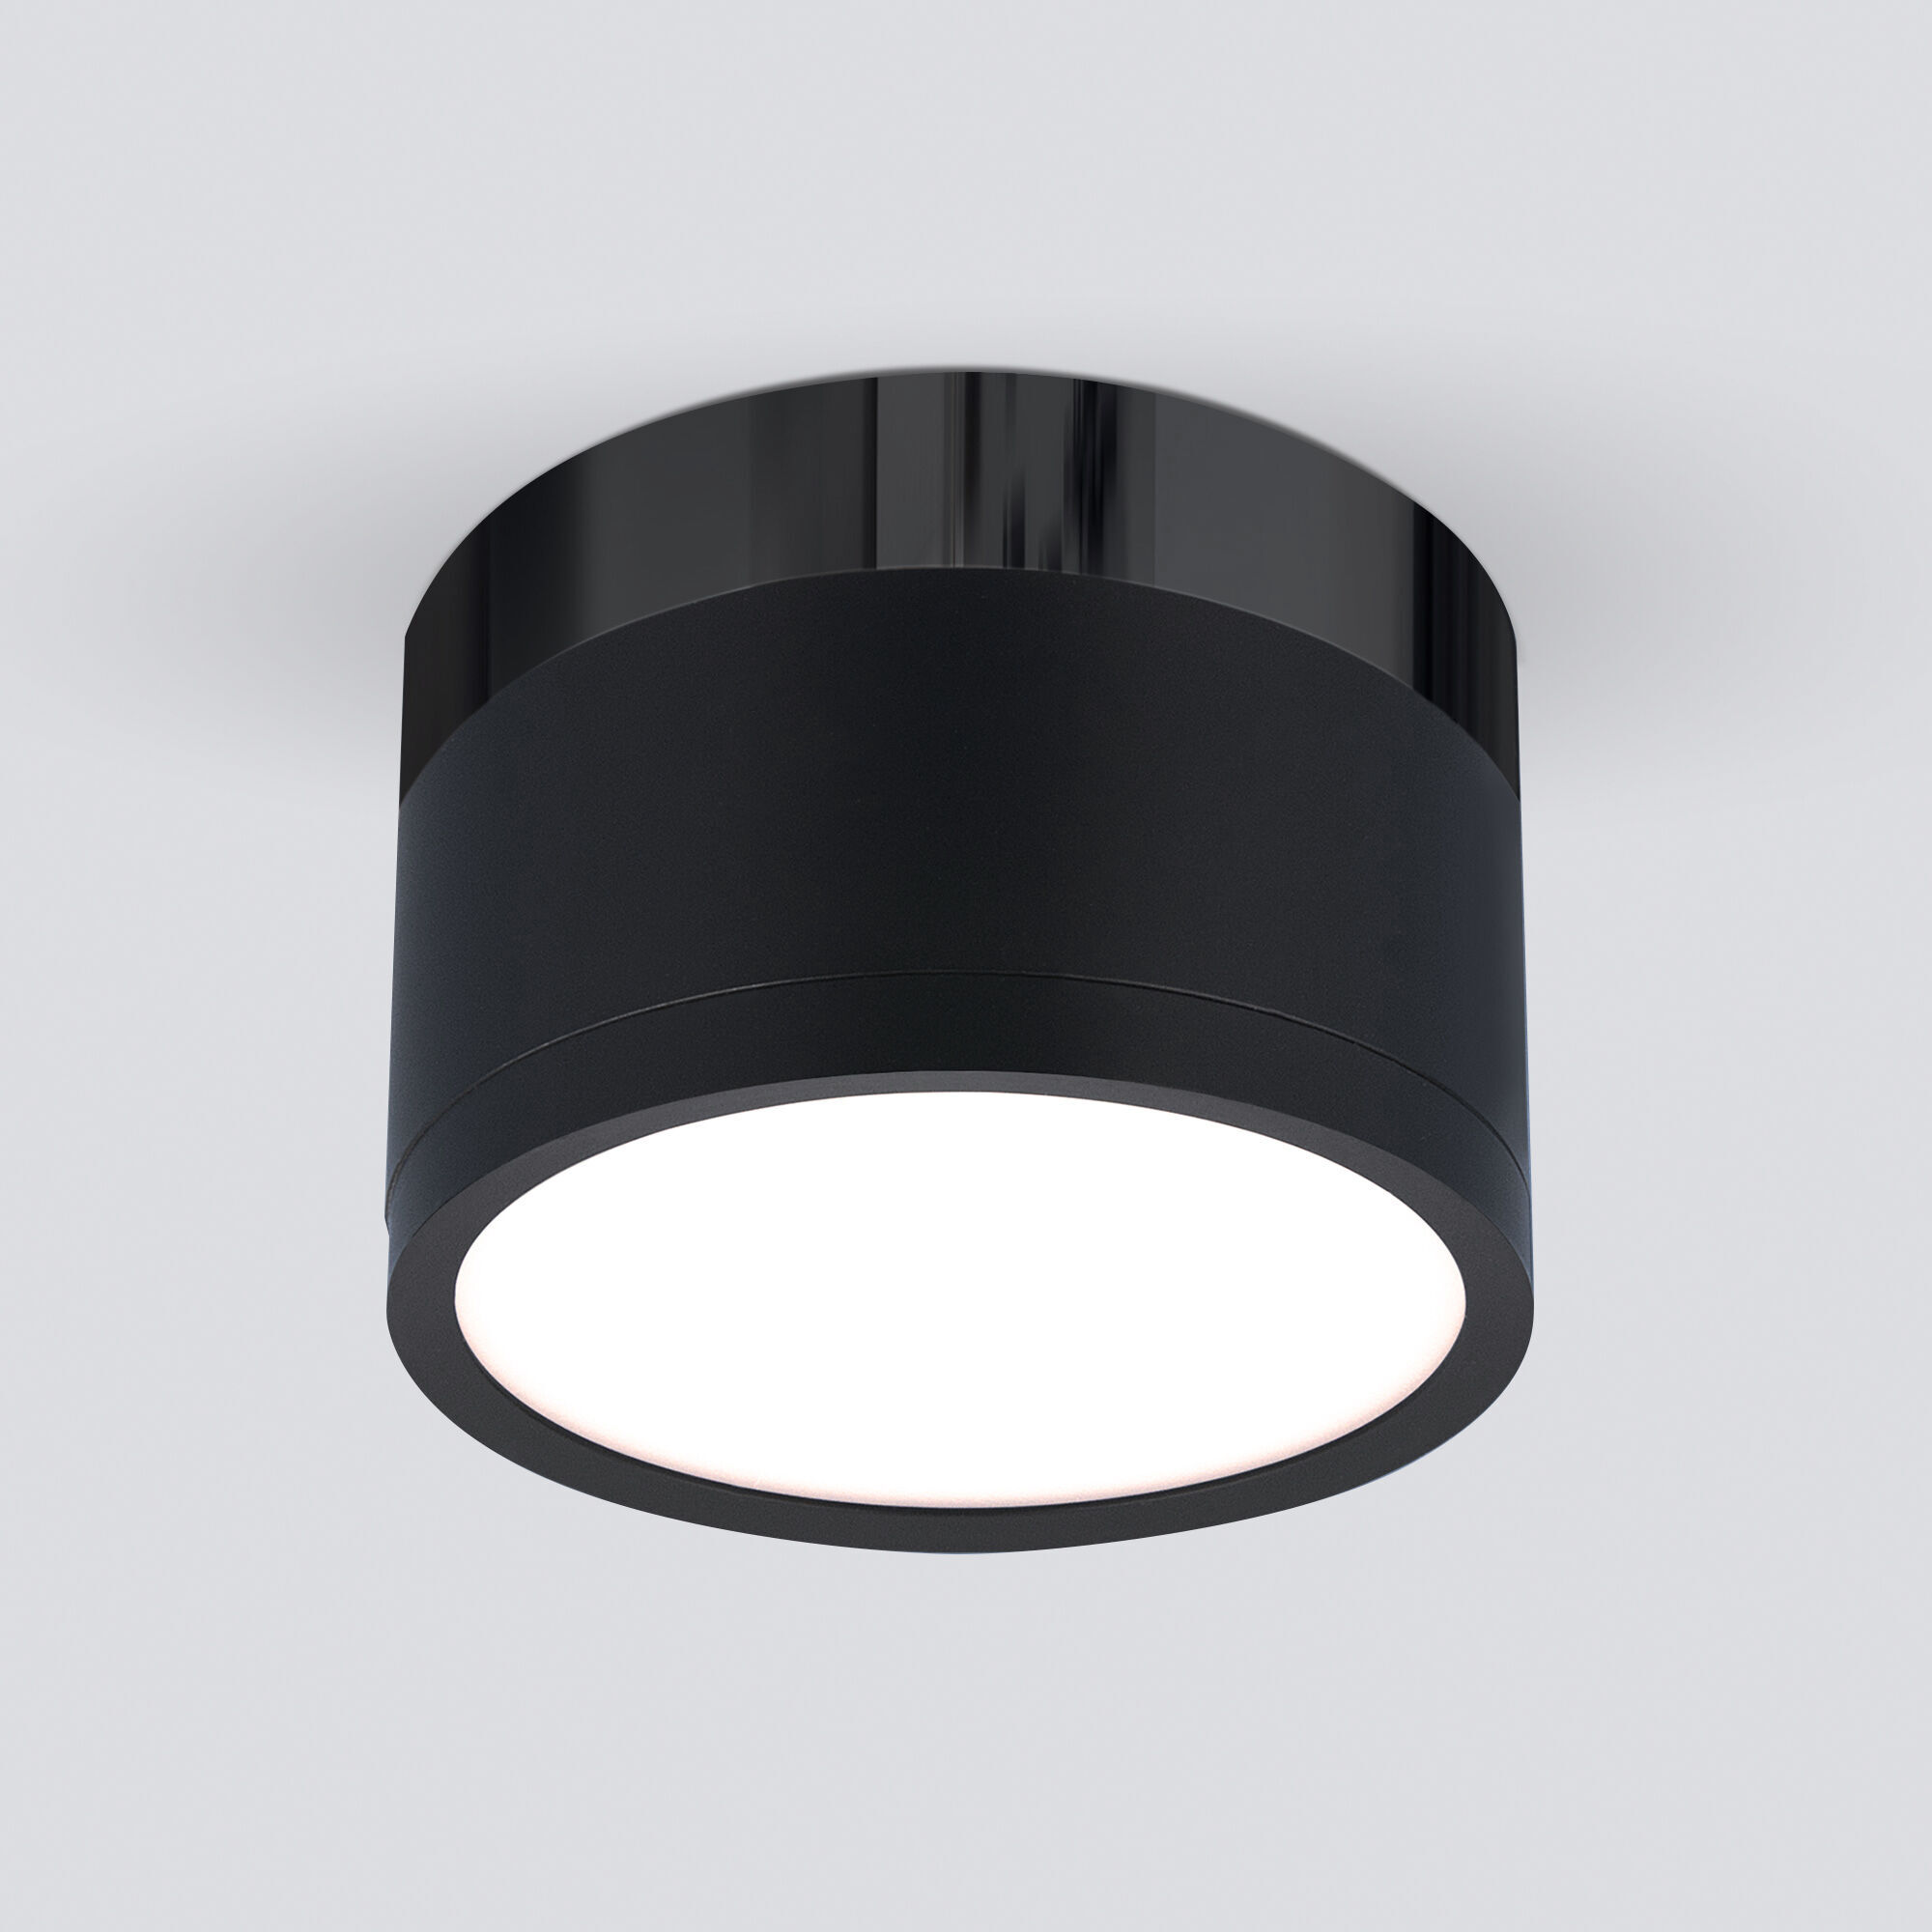 Накладной потолочный светодиодный светильник Elektrostandard DLR029 DLR029 10W 4200K черный матовый/черный хром. Фото 1